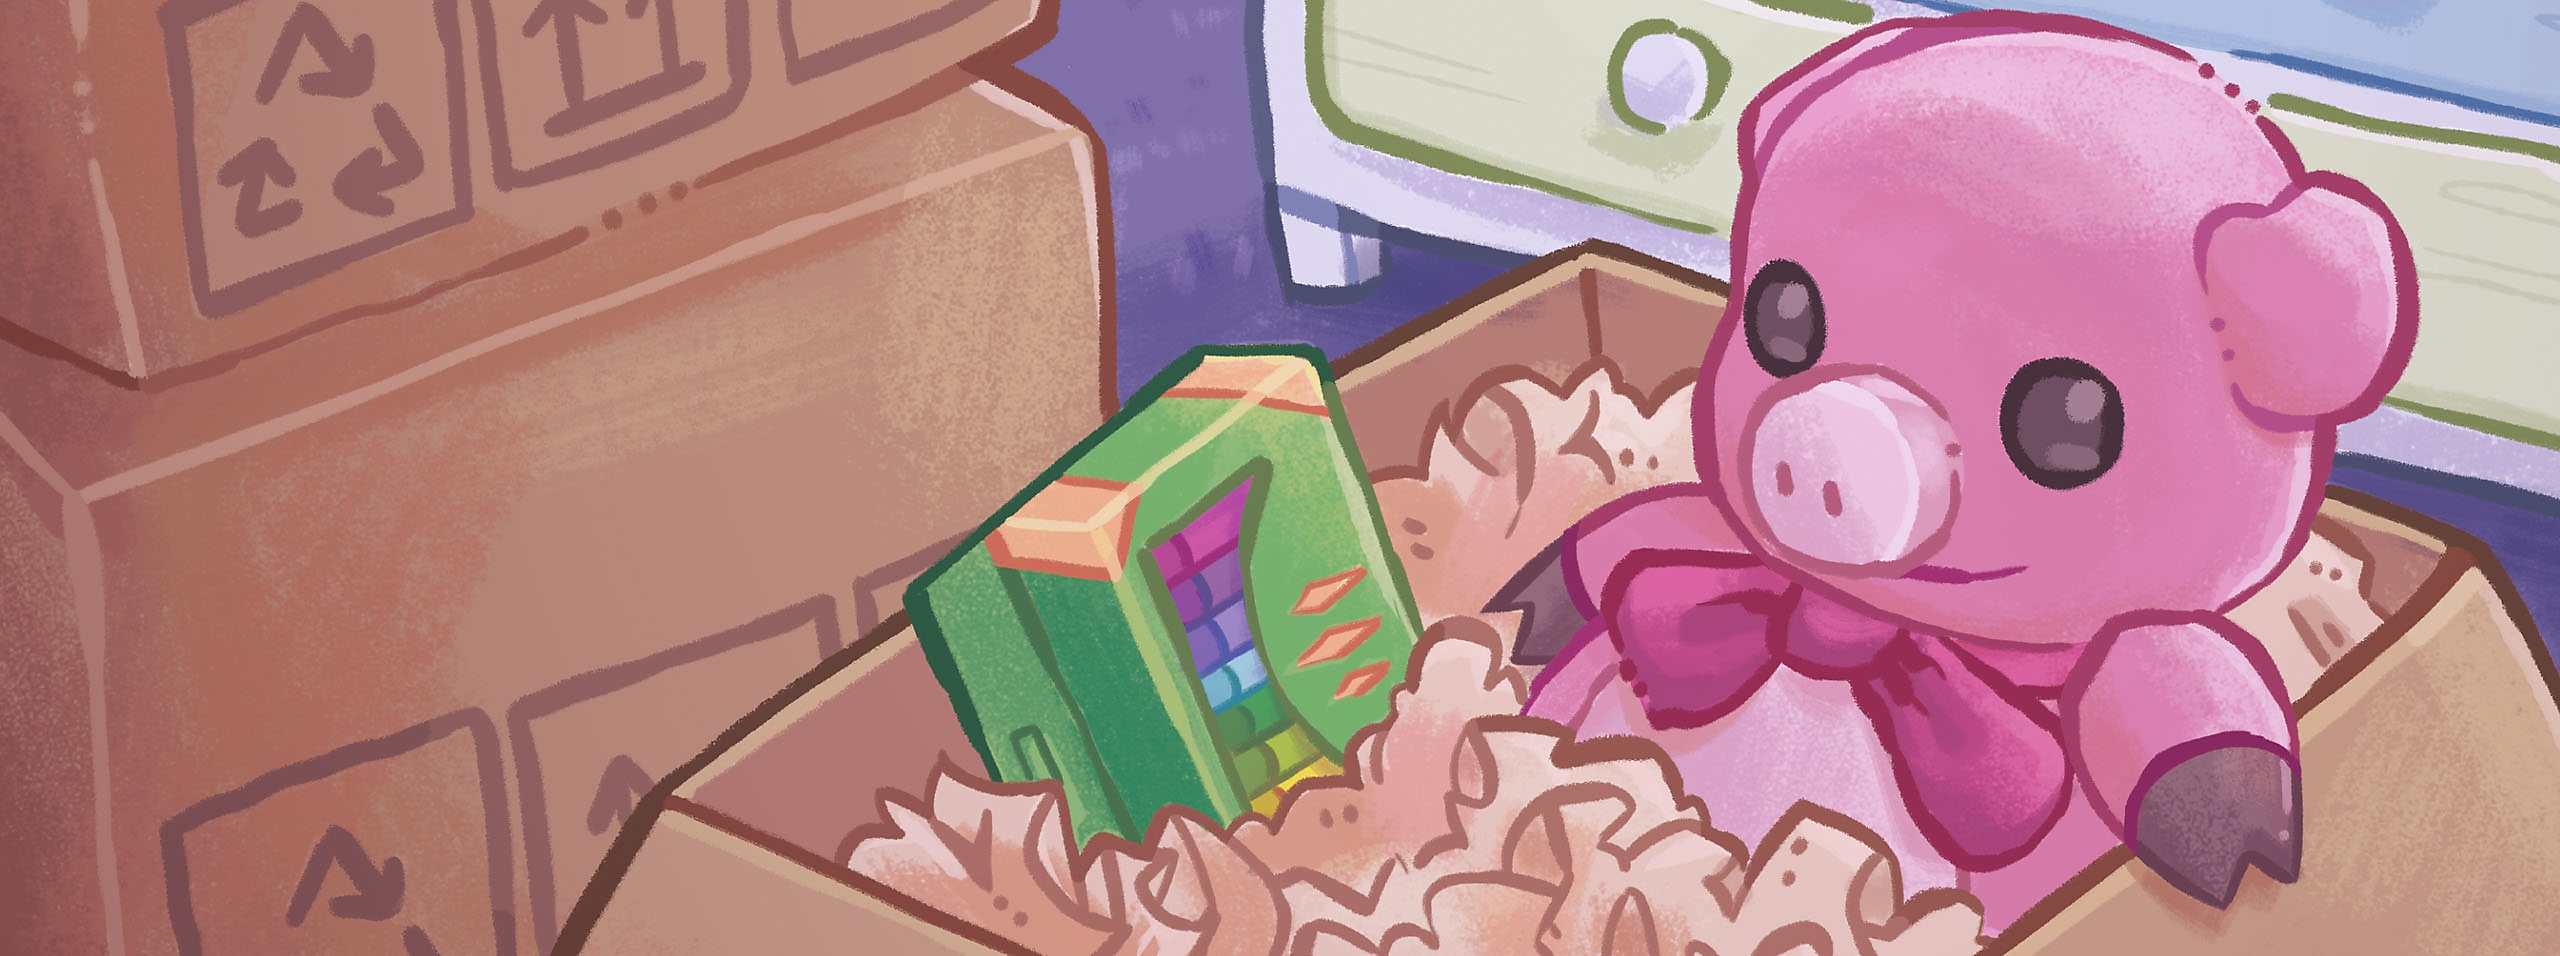 Arte del héroe de Unpacking mostrando una caja de cartón con un cerdito de juguete rosa en su interior